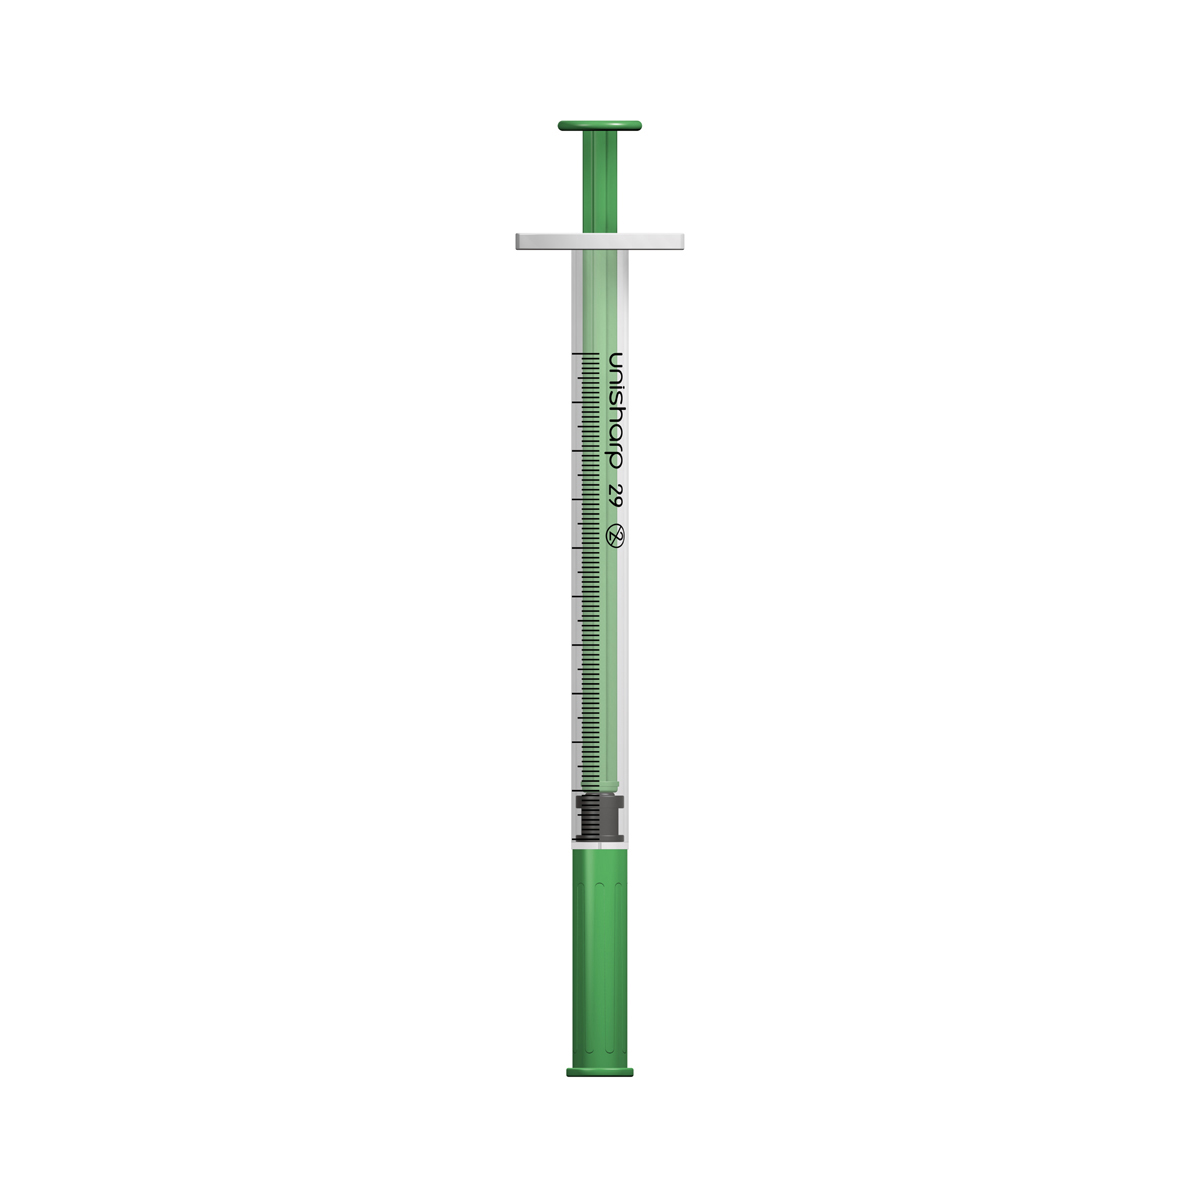 Unisharp 1ml 29G fixed needle syringe: green